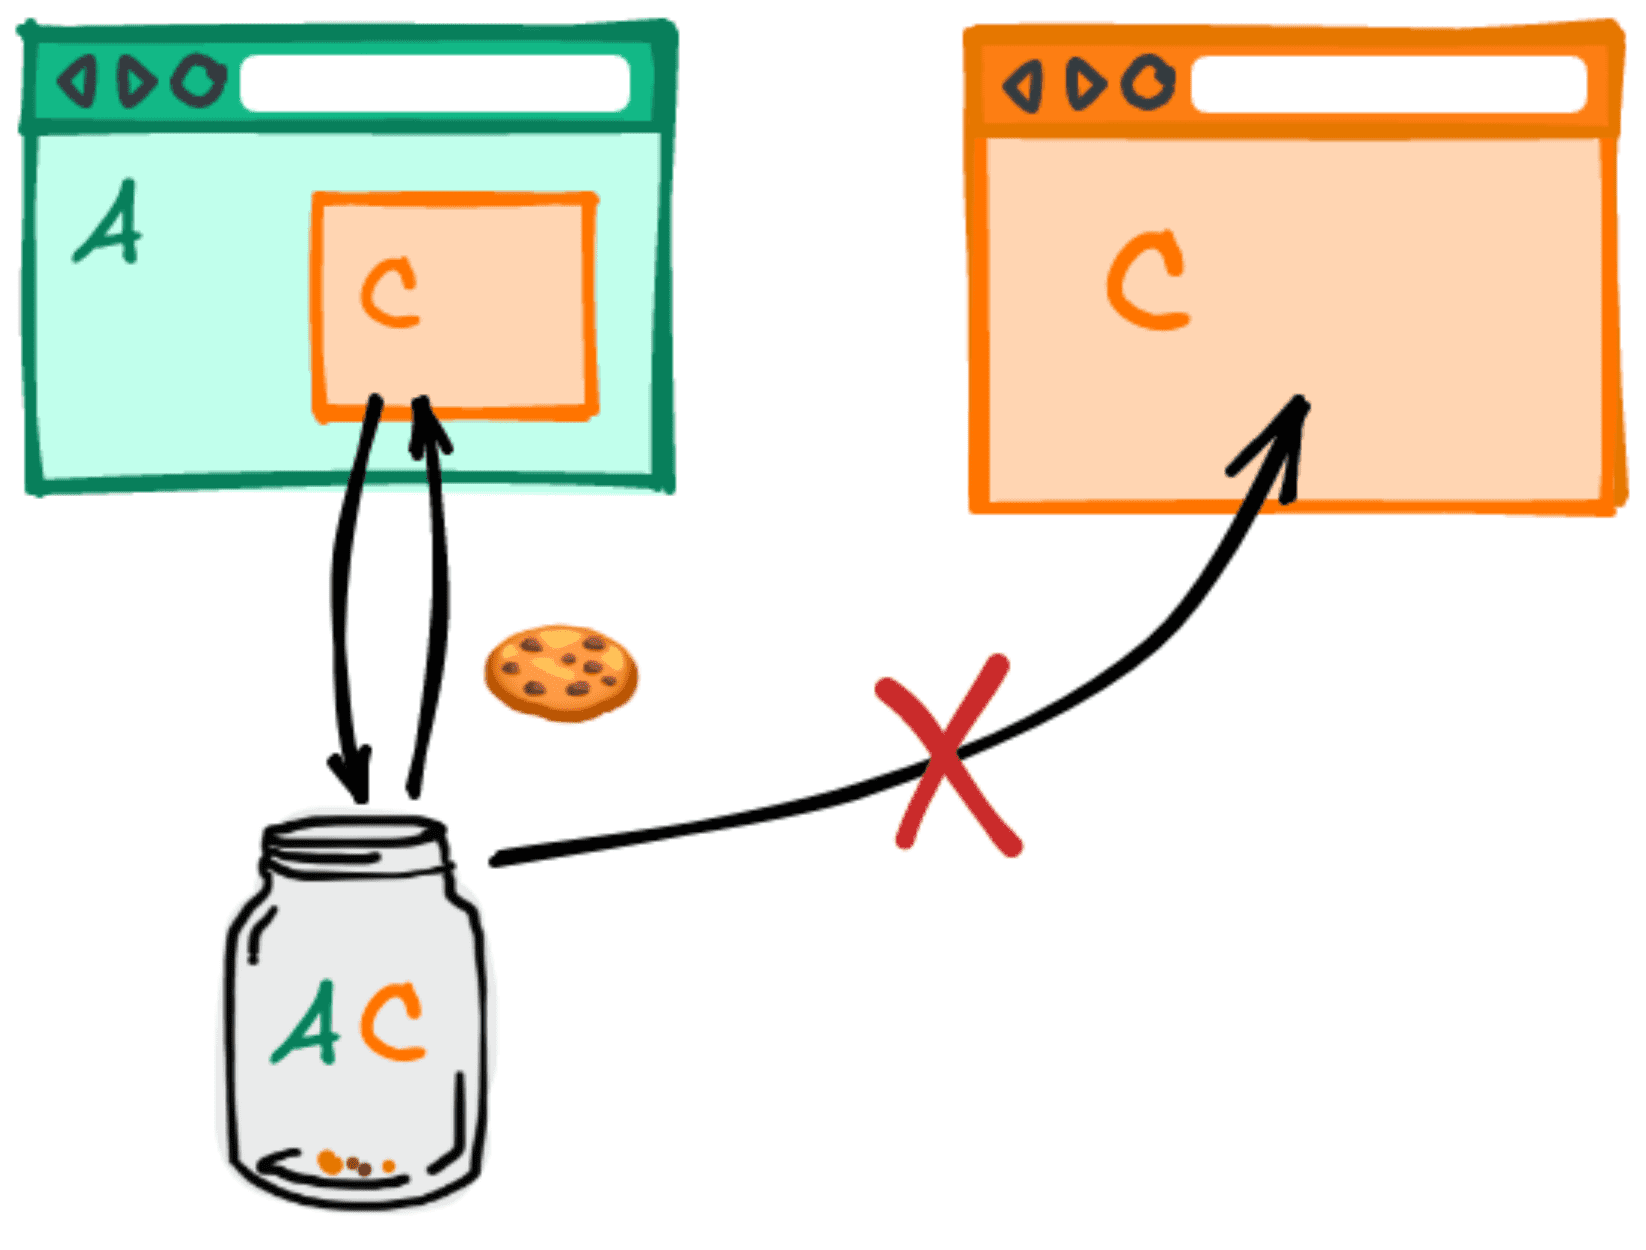 डायग्राम में दिखाया गया है कि जब दो अलग-अलग वेबसाइटों पर एक ही तीसरे पक्ष को एम्बेड किया जाता है, तब कुकी शेयर नहीं की जाती हैं.